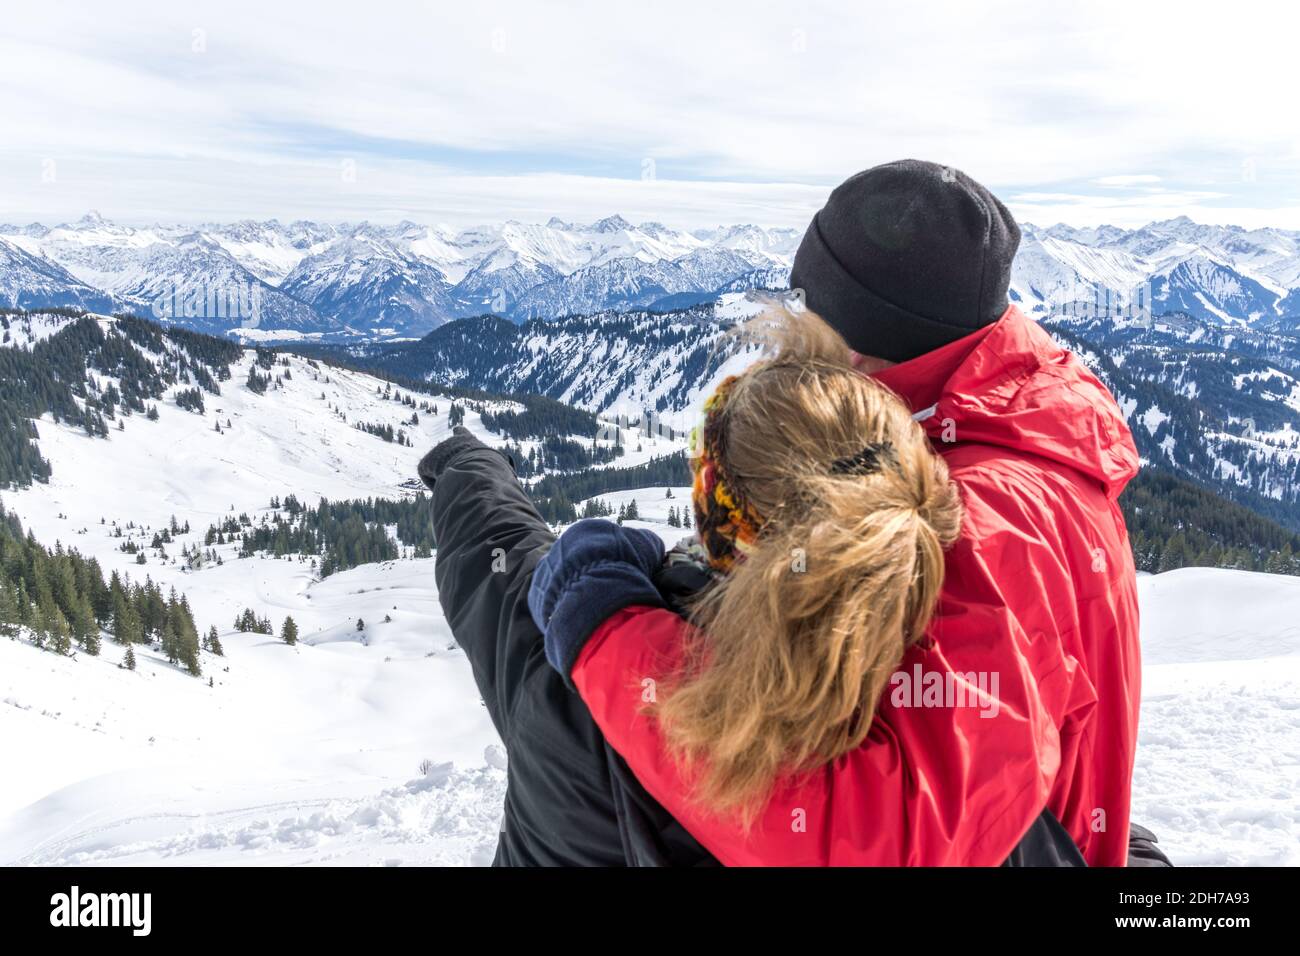 Senior-Paar ist Wandern in alpinen Schnee Winter Berge genießen Panoramablick und zeigt mit dem Finger auf Berggipfel. Allgau, Bayern, Deutschland. Stockfoto